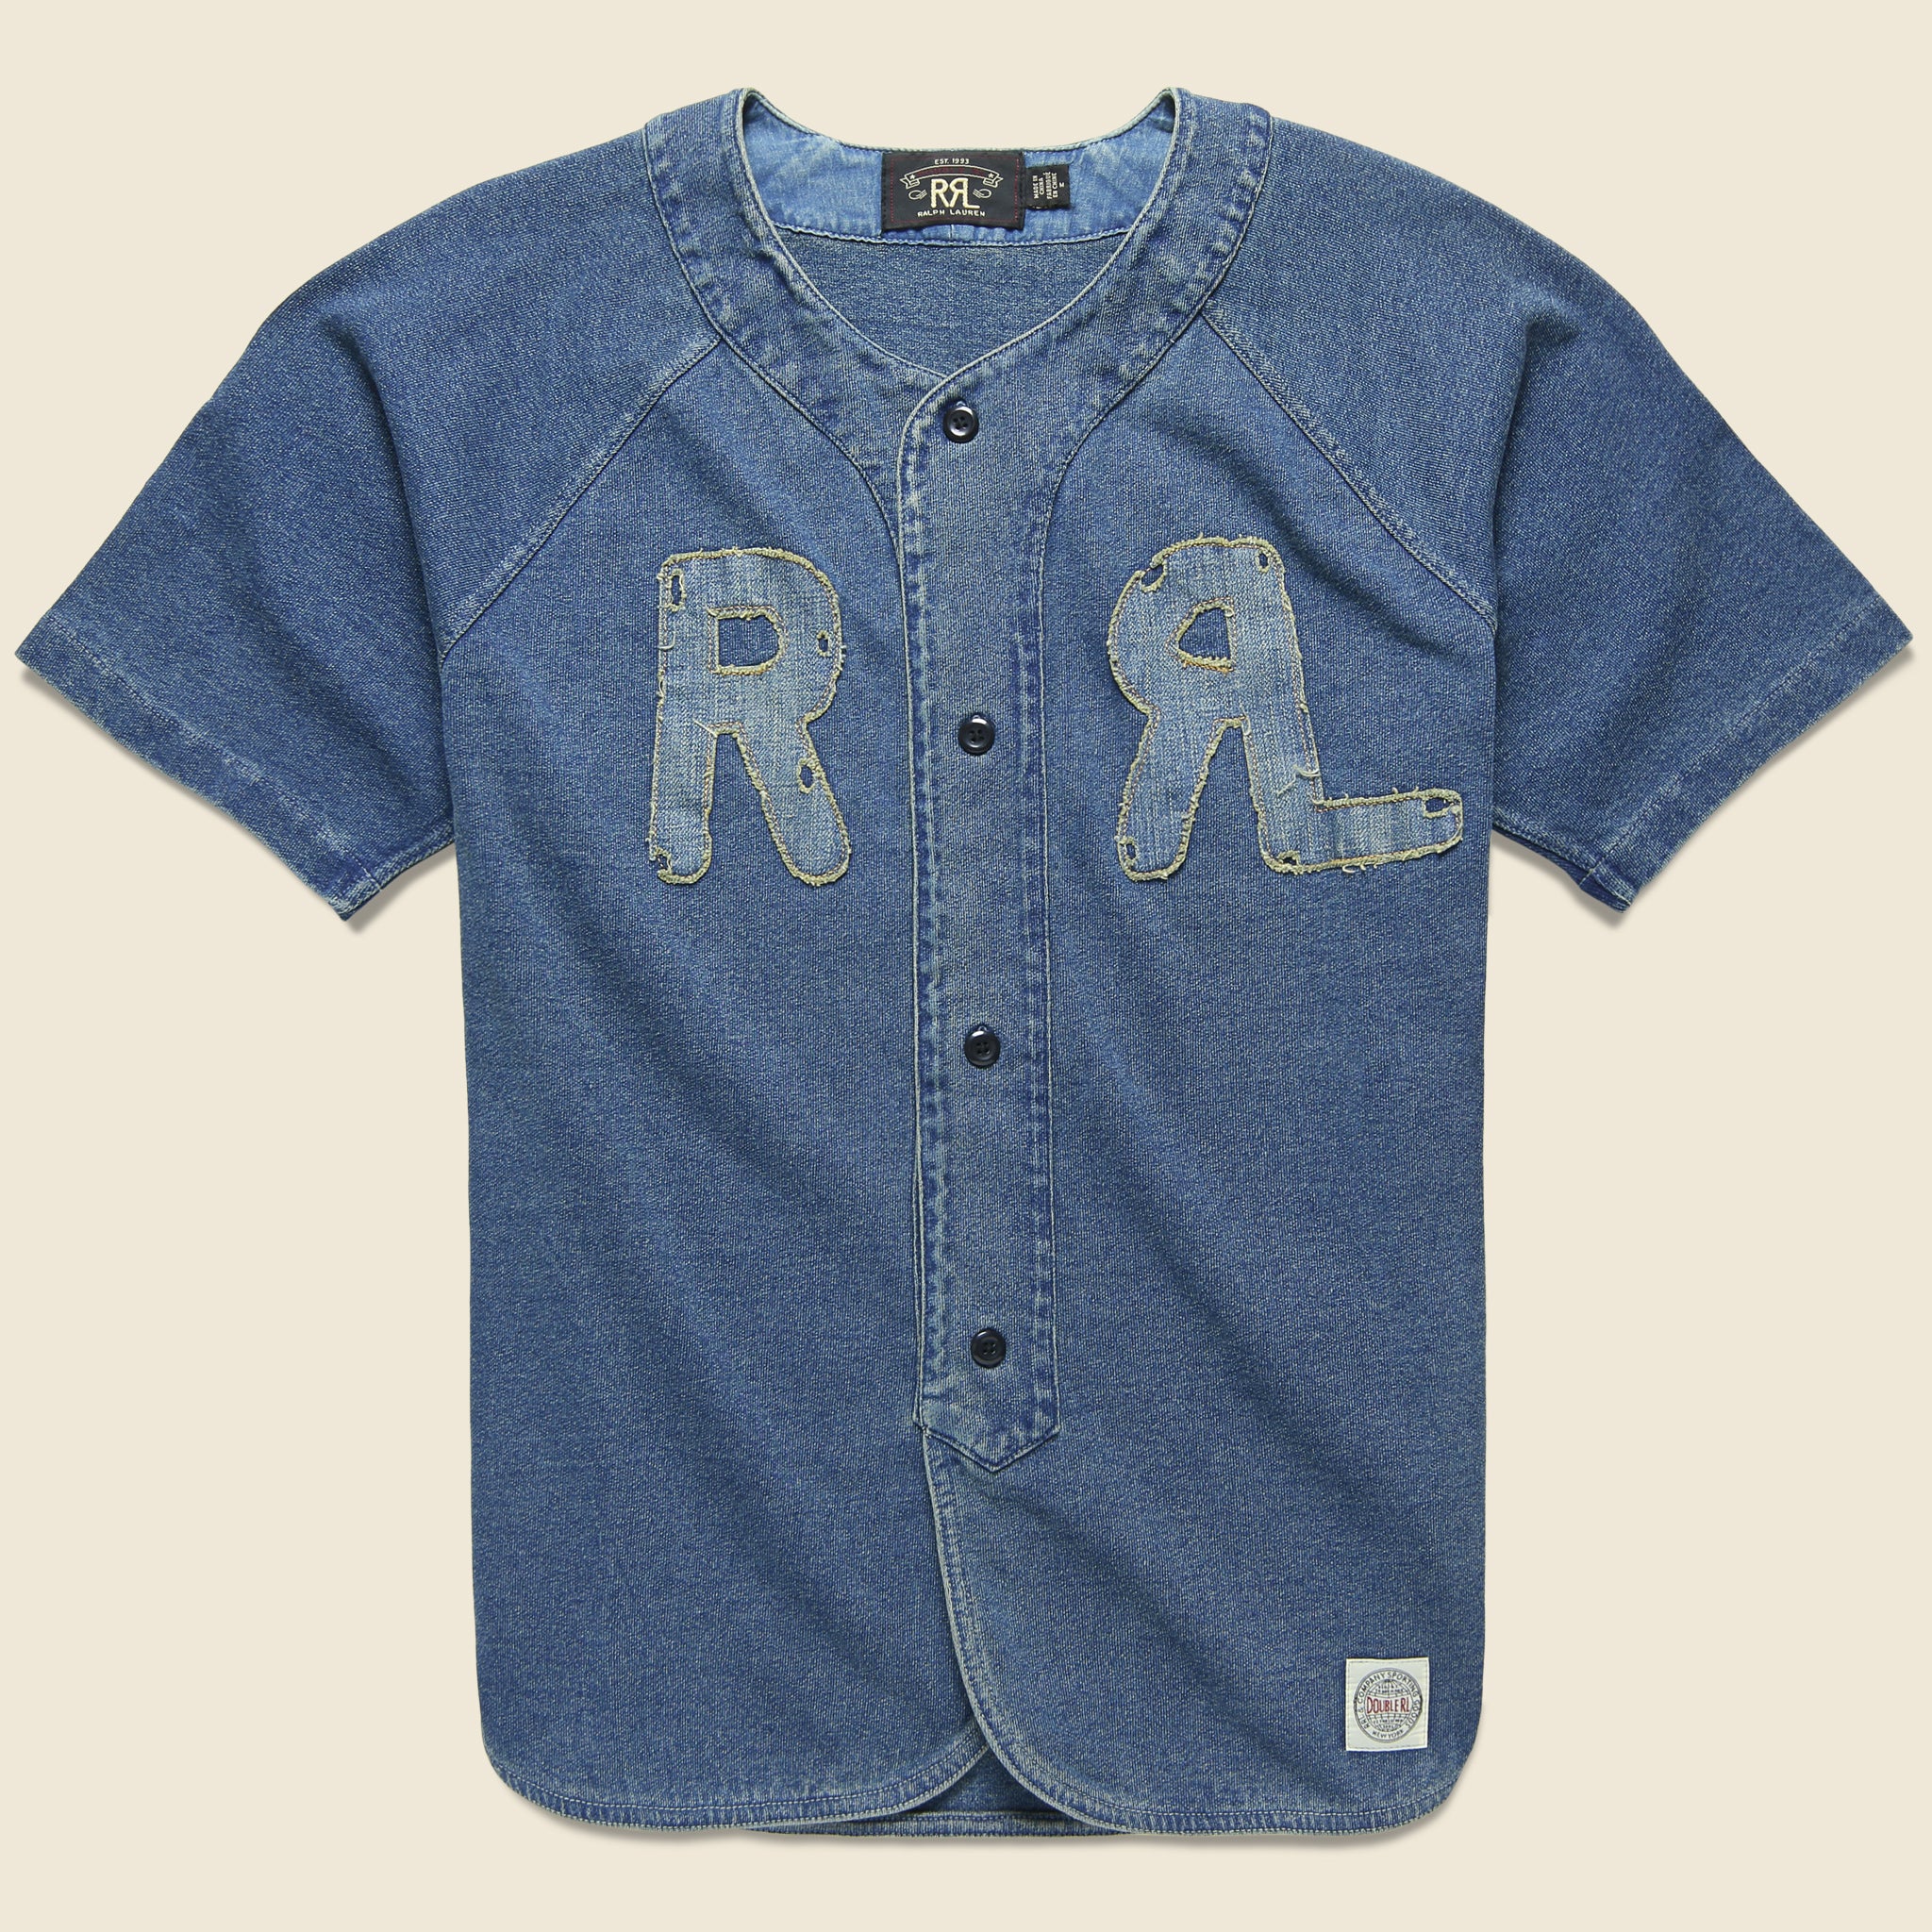 Indigo Baseball Jersey - Washed Blue